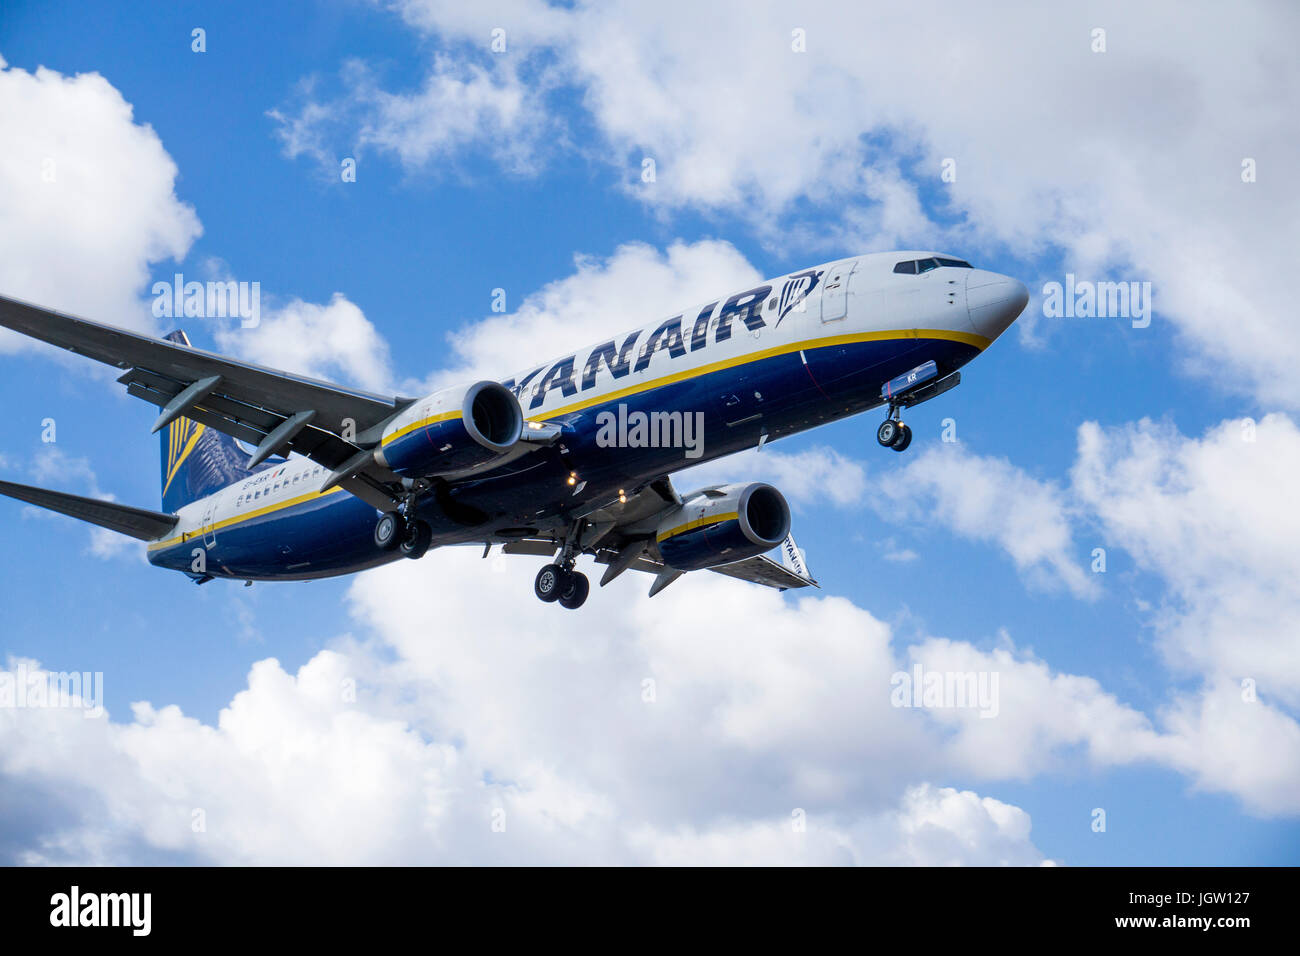 Ryanair beim Landeanflug auf den Flughafen Lanzarote, Ryanair landing at airport, Lanzarote island, Canary islands, Spain Stock Photo